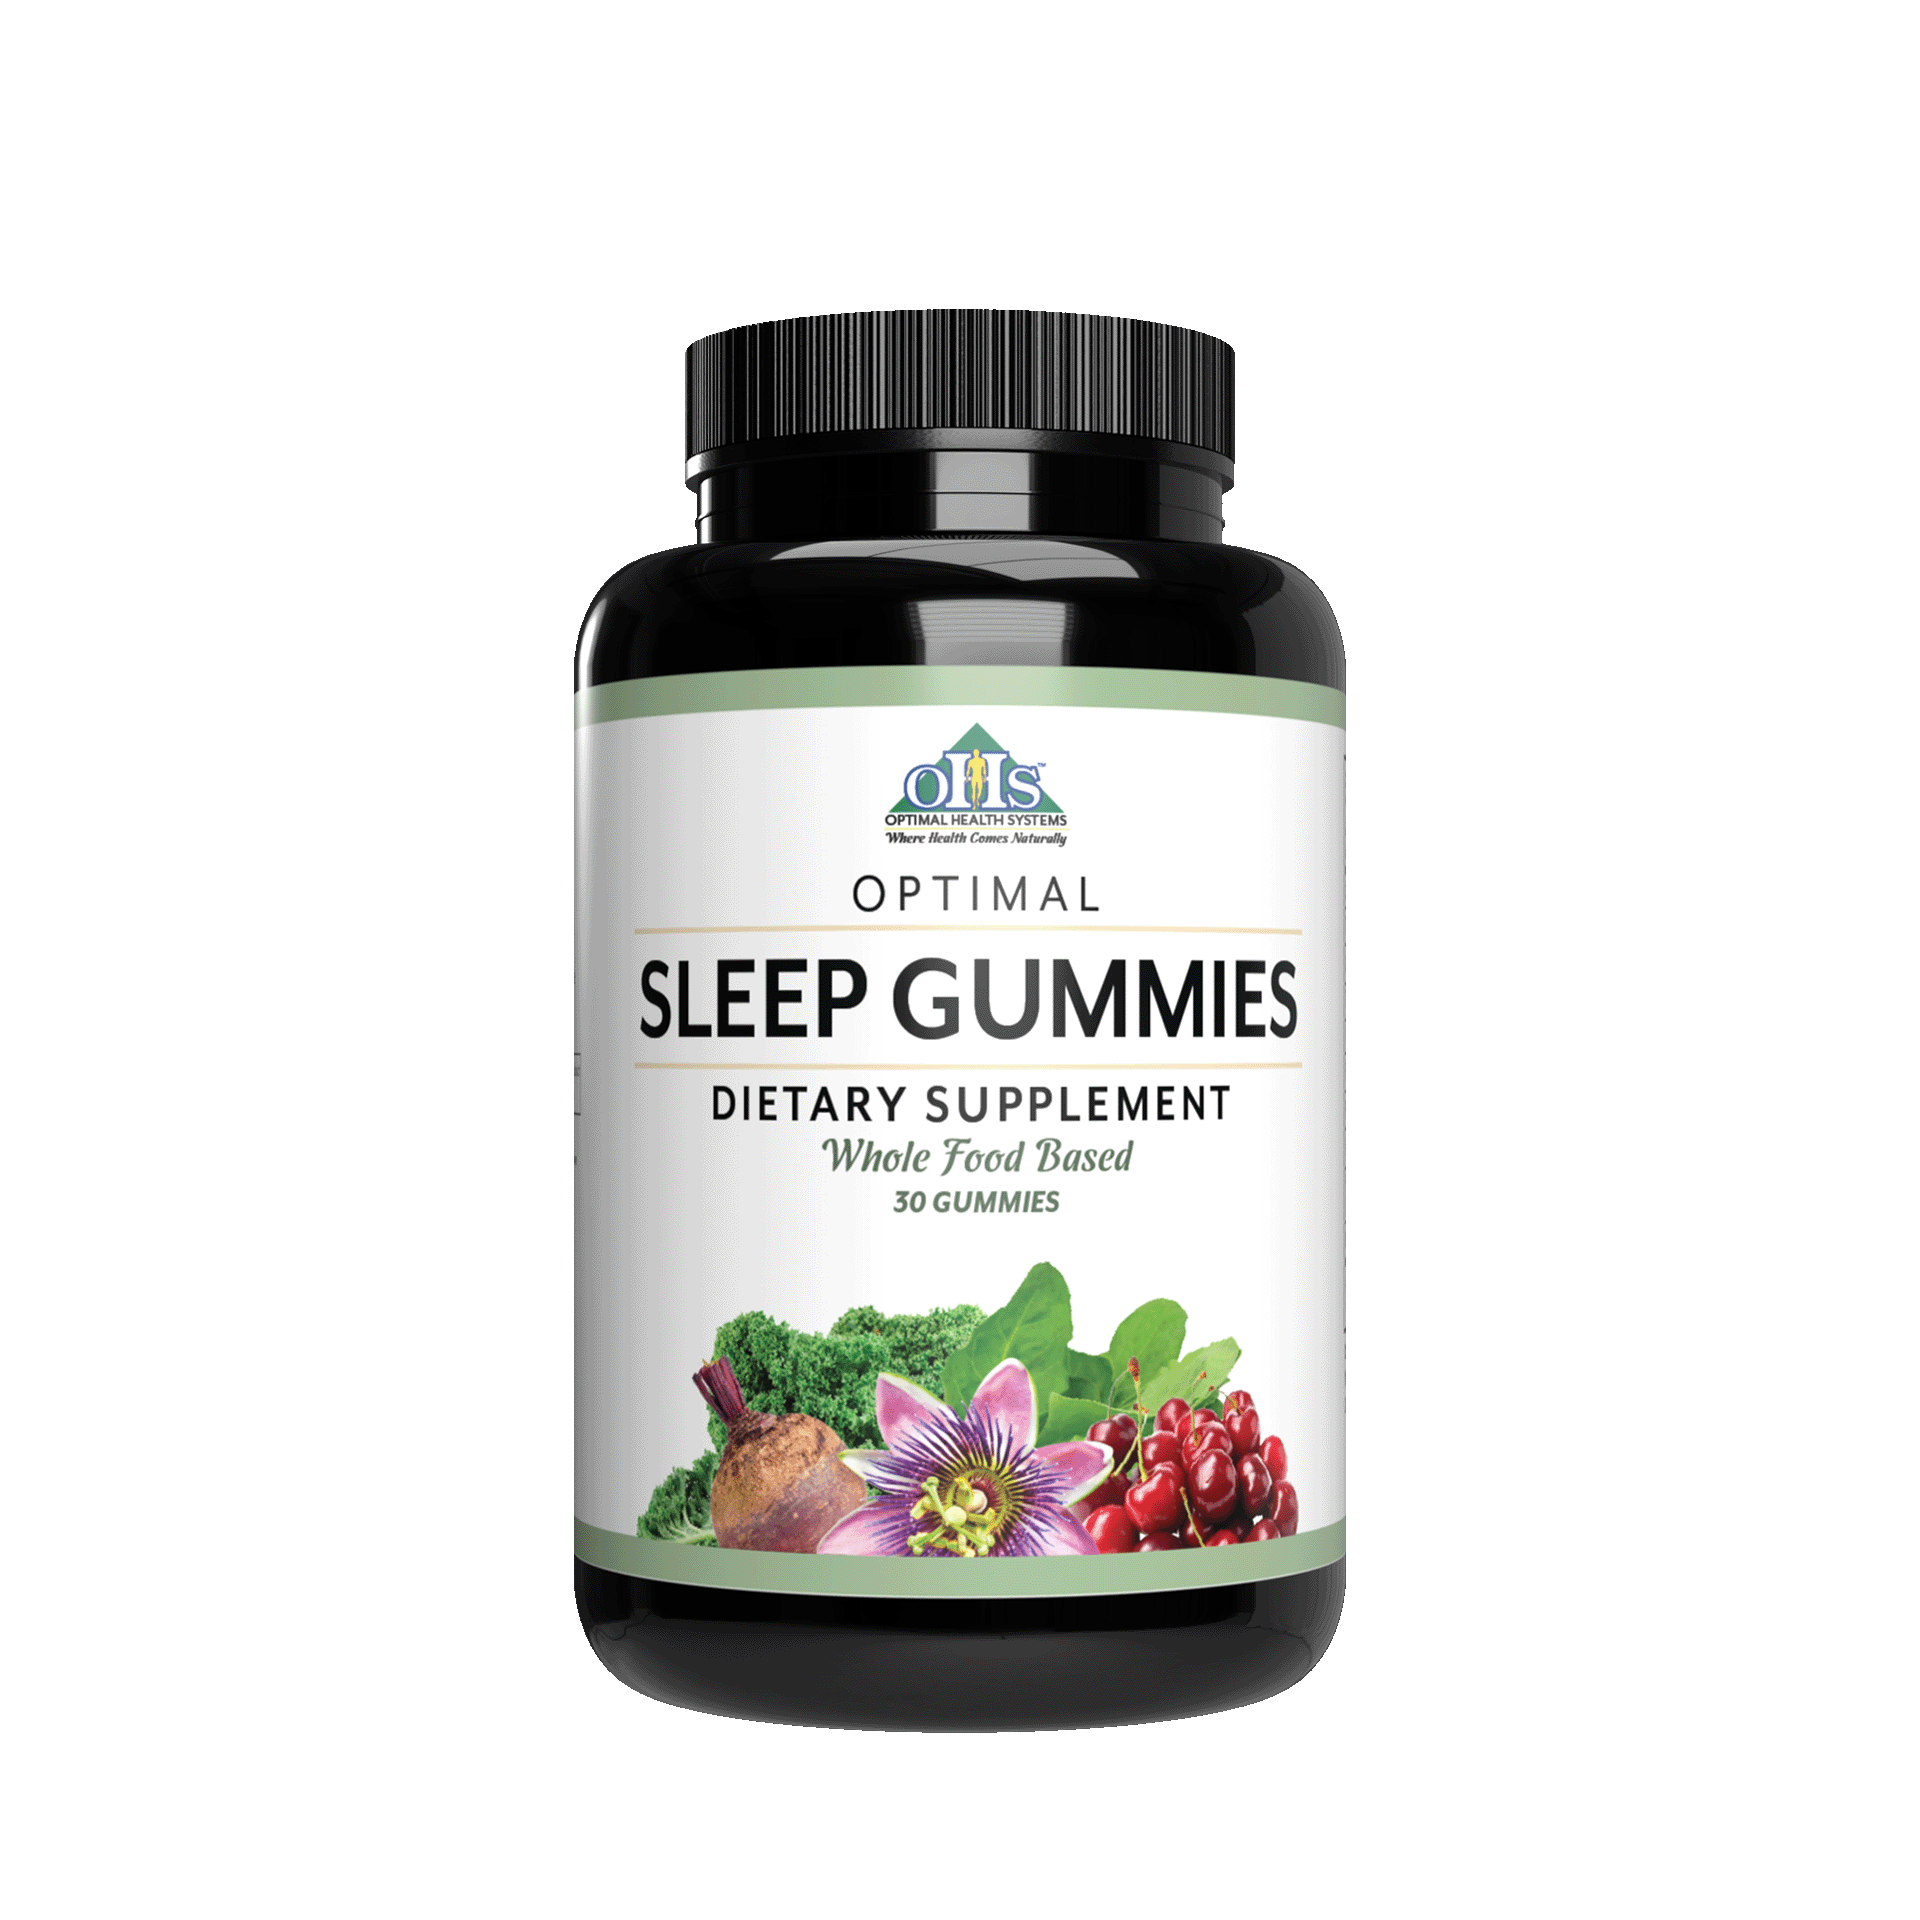 Image of a bottle of Optimal Sleep Gummies.